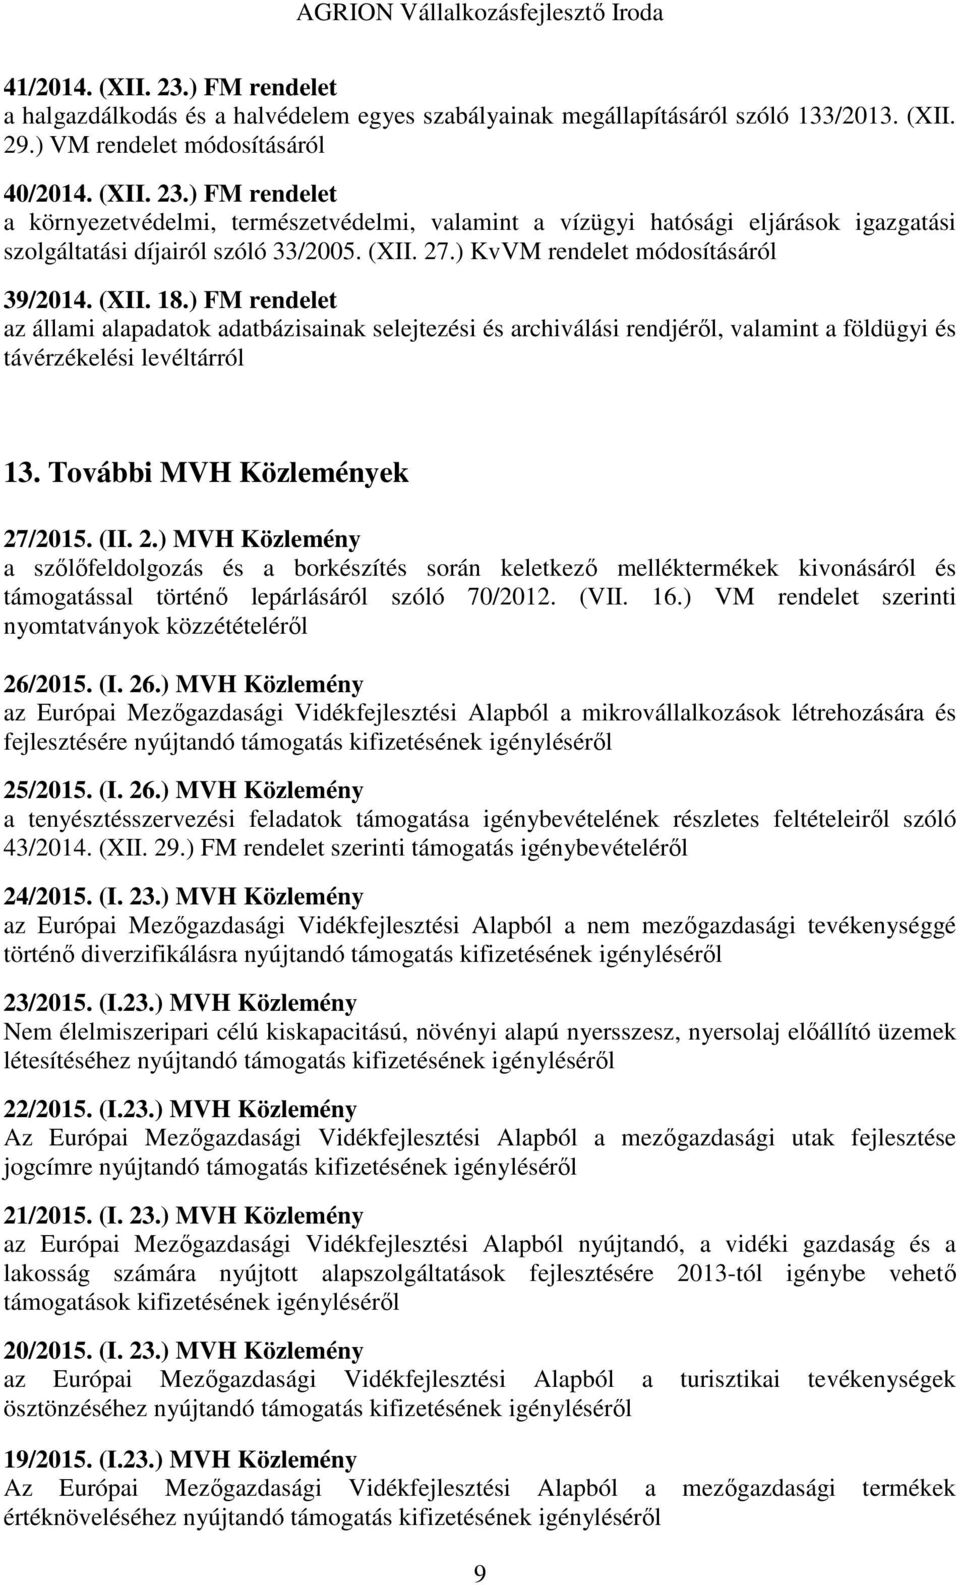 További MVH Közlemények 27/2015. (II. 2.) MVH Közlemény a szőlőfeldolgozás és a borkészítés során keletkező melléktermékek kivonásáról és támogatással történő lepárlásáról szóló 70/2012. (VII. 16.